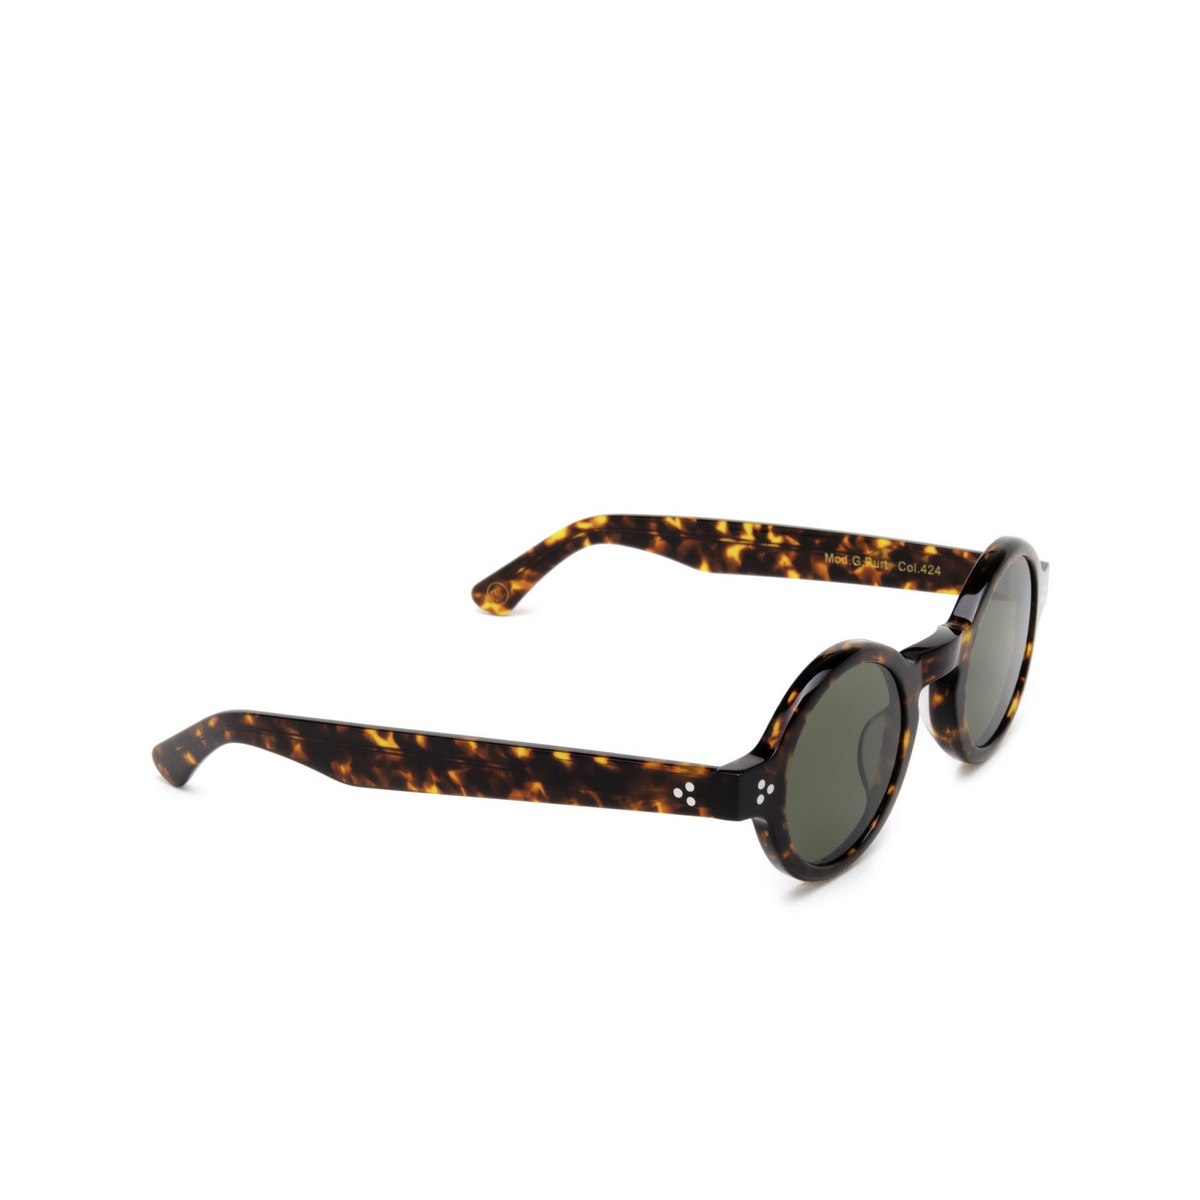 Lesca® Round Sunglasses: Burt Sun color Dark Tortoise 424 - three-quarters view.